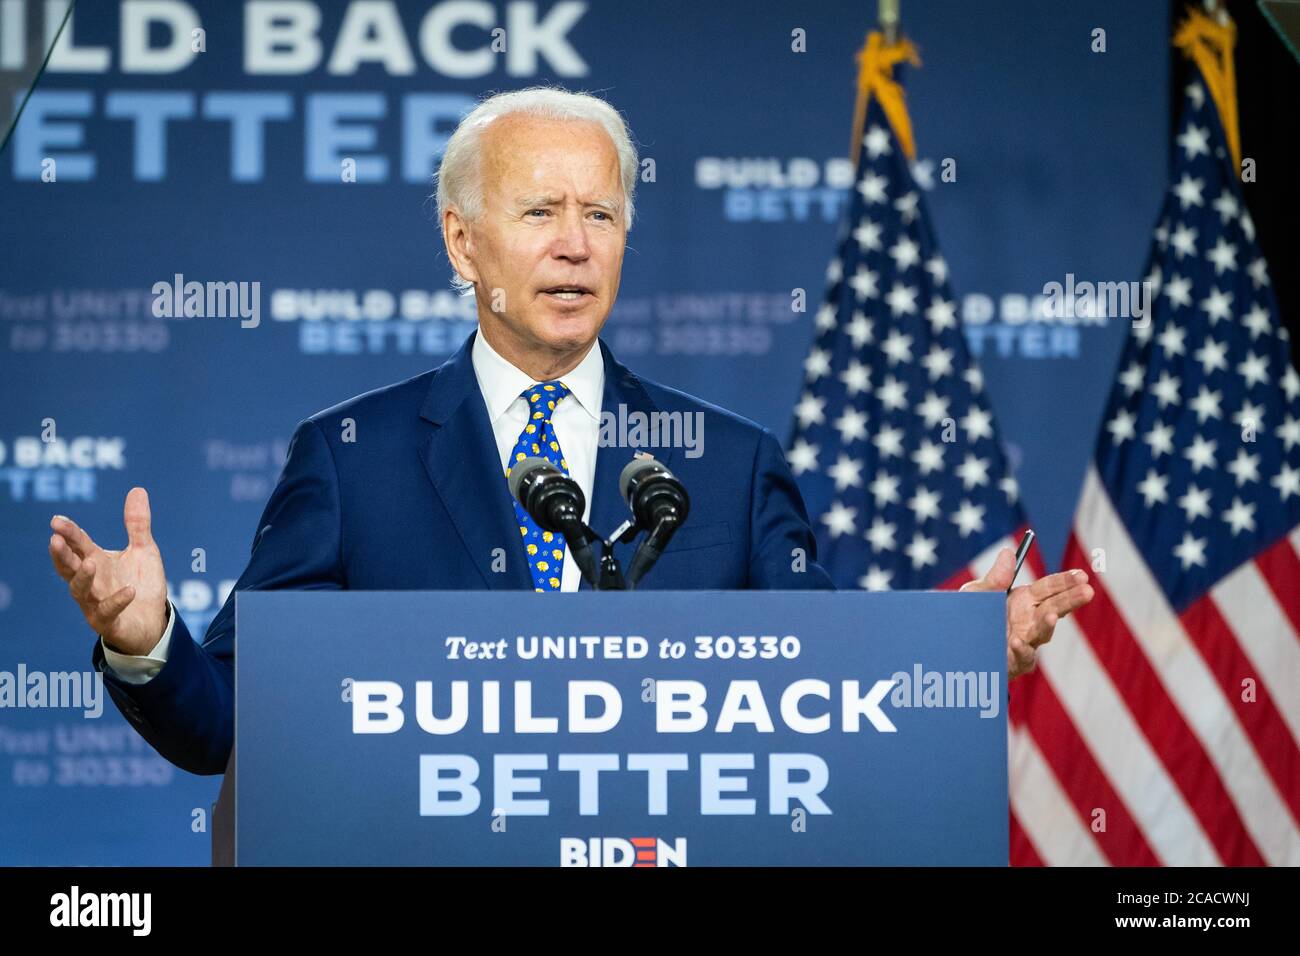 WILMINGTON, DELAWARE, USA - 28. Juli 2020 - US-Präsidentschaftskandidat Joe Biden spricht auf der Build Back Better Pressekonferenz zu Economic Equity in Stockfoto